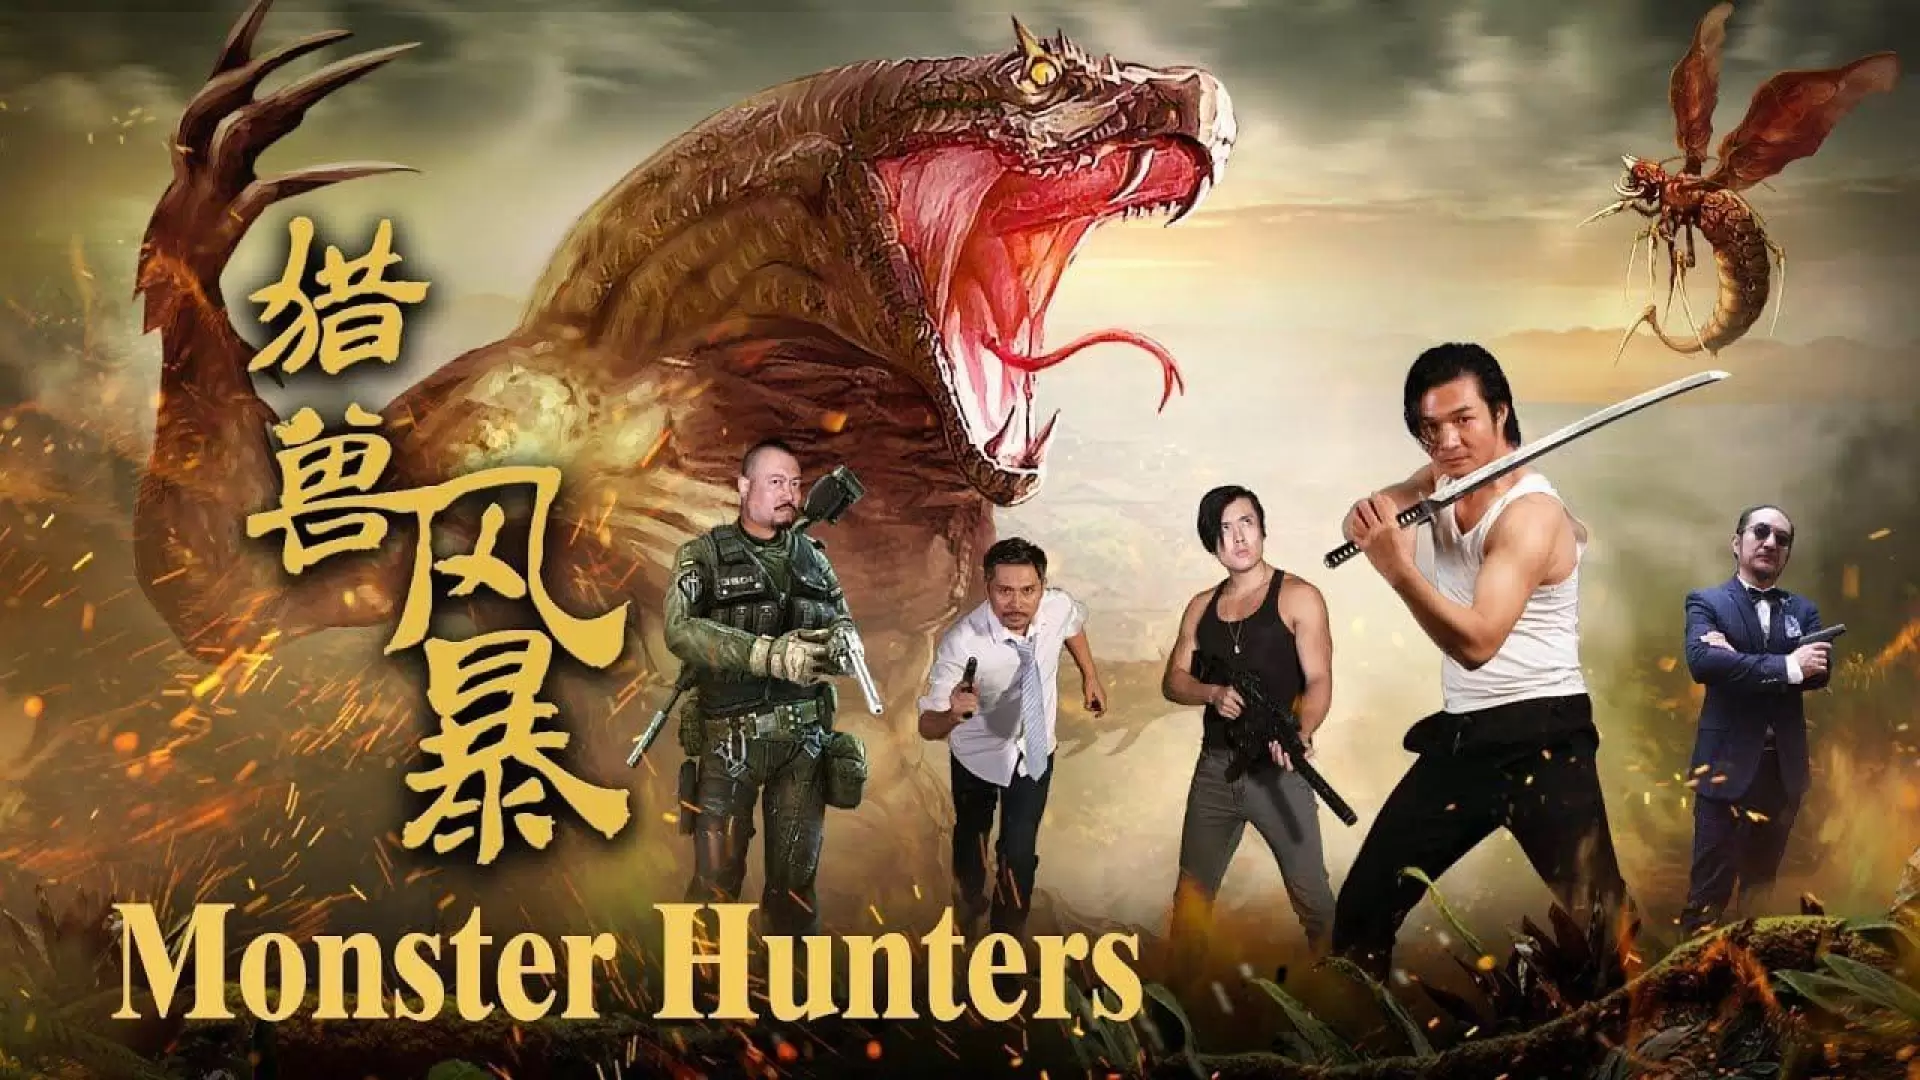 دانلود فیلم Monster Hunters 2020